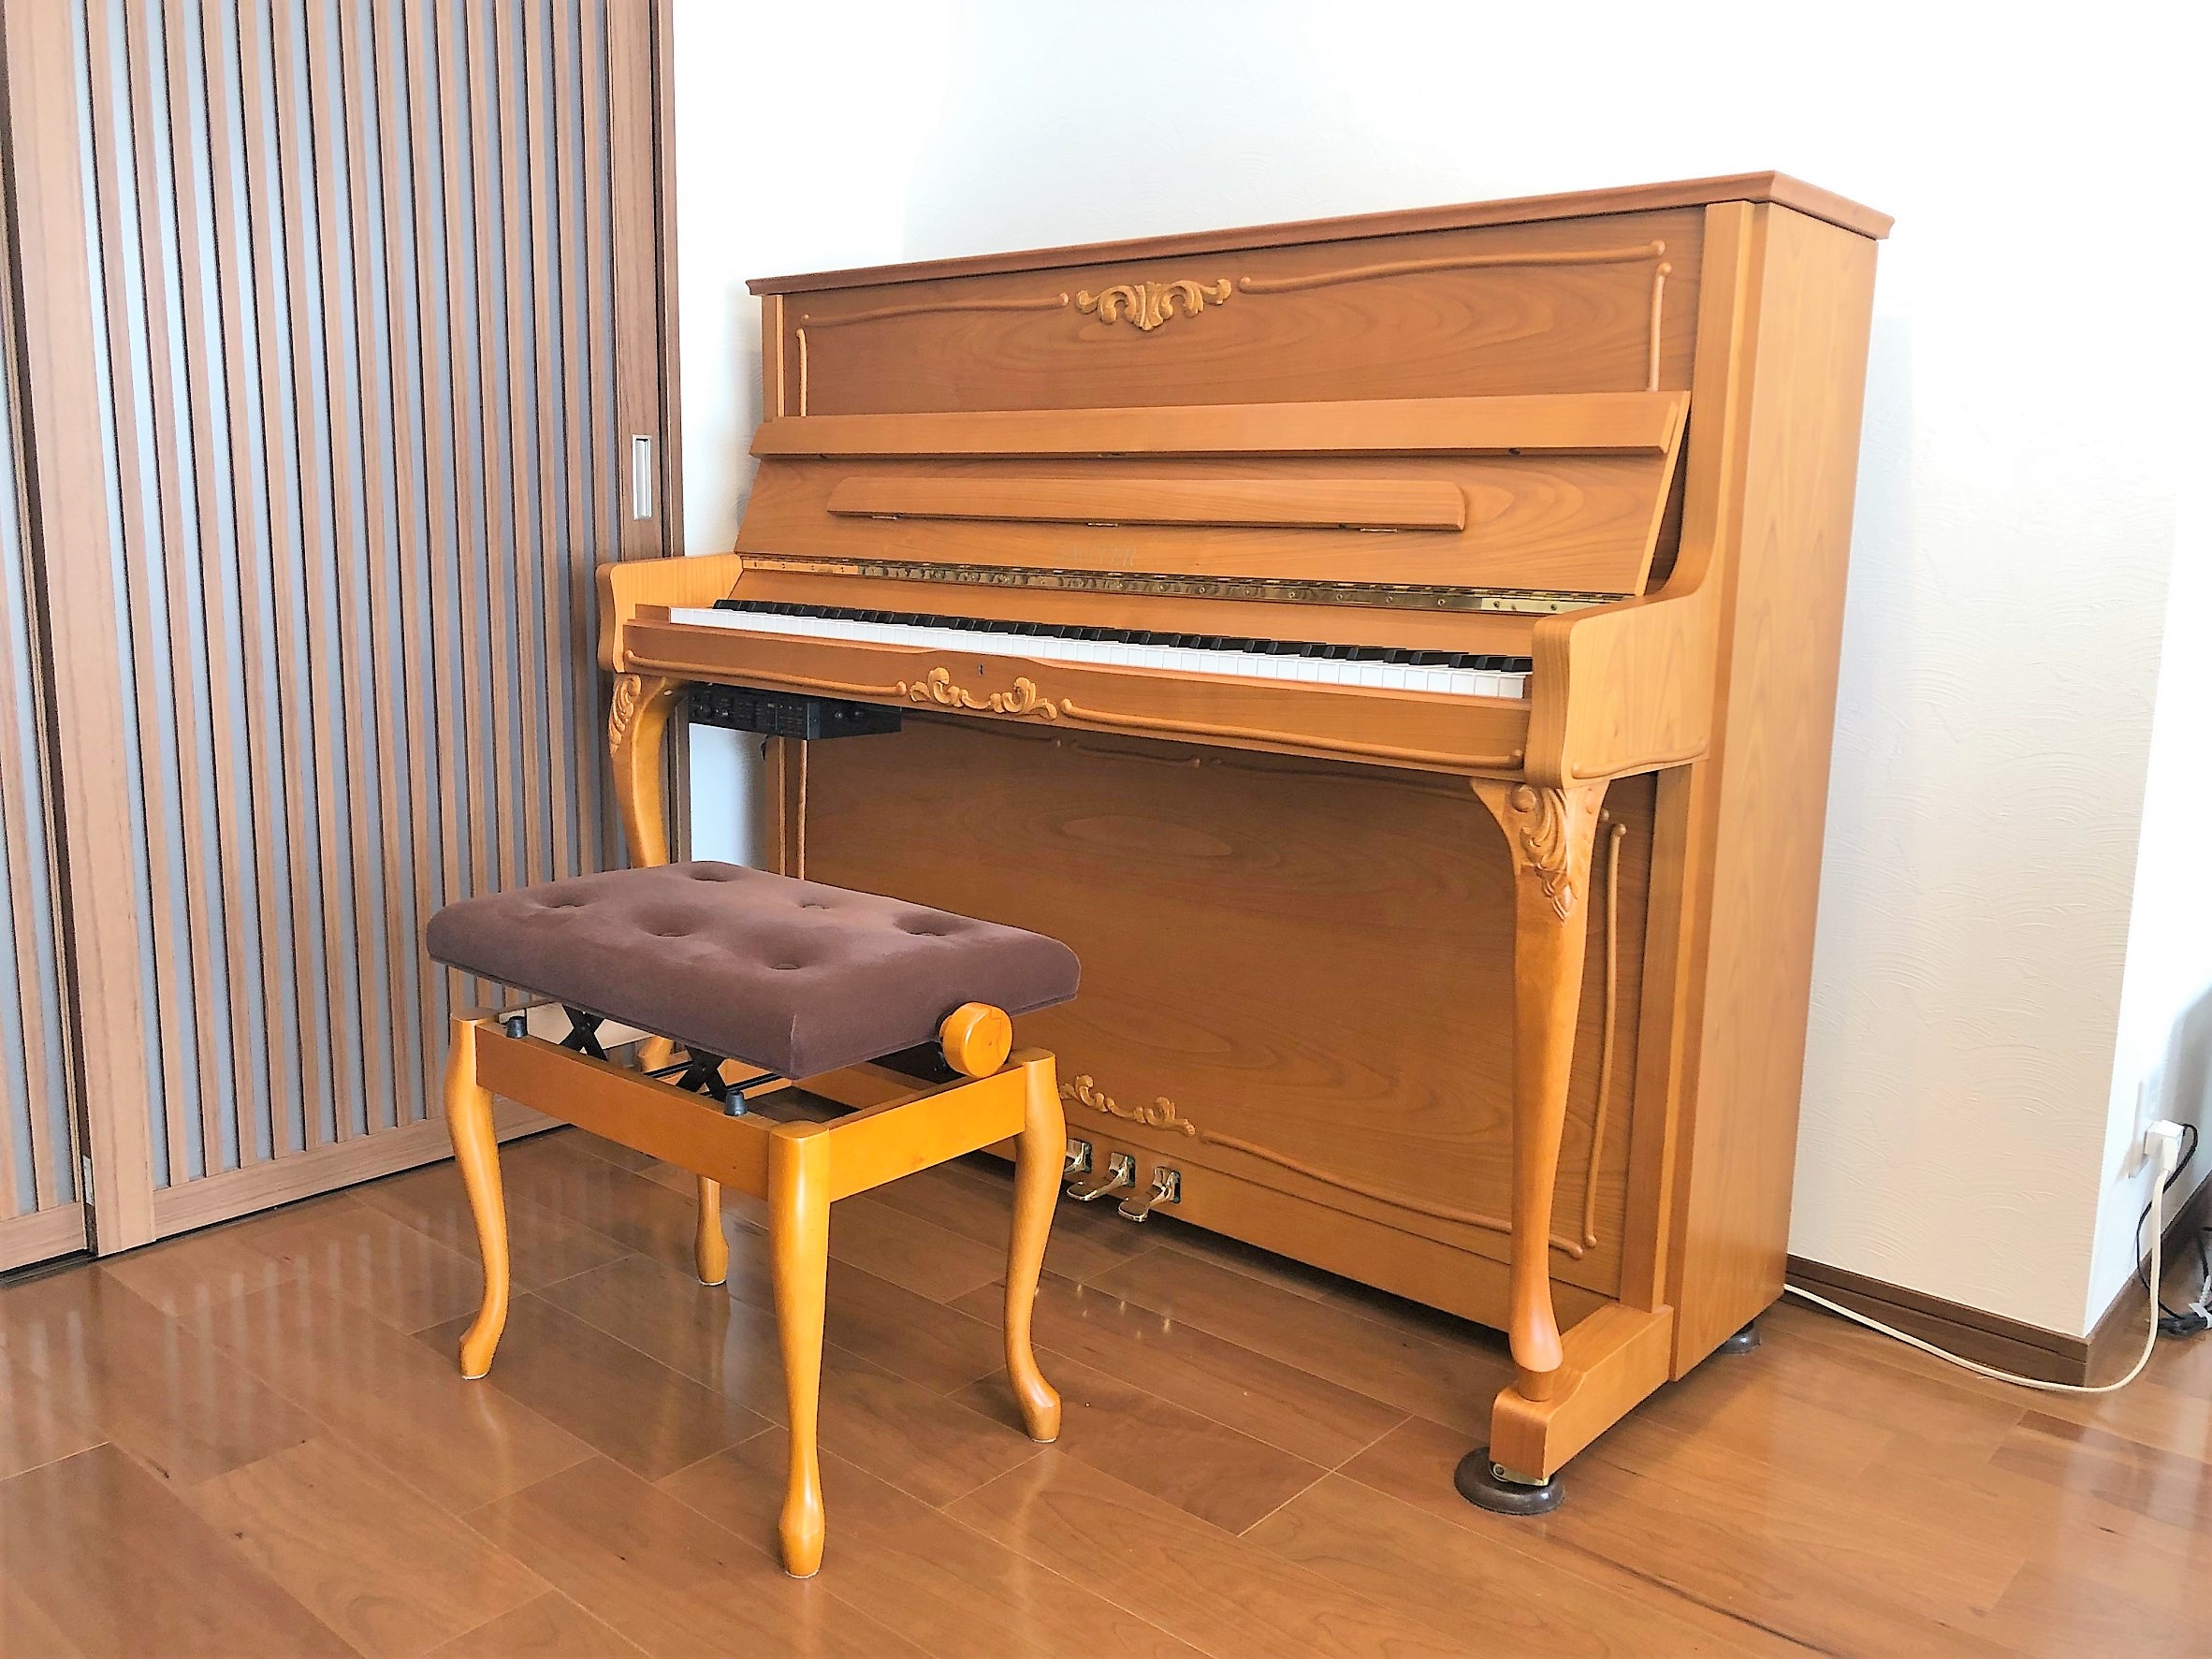 ザウターの音色を好んで頂き、また木目・チッペンデール脚のバロックデザインをお気に召していただき、設置されたリビングのイメージととても合っていて素敵な空間でした。 これからもご家族皆様で、このザウターピアノの音色で癒されてください！